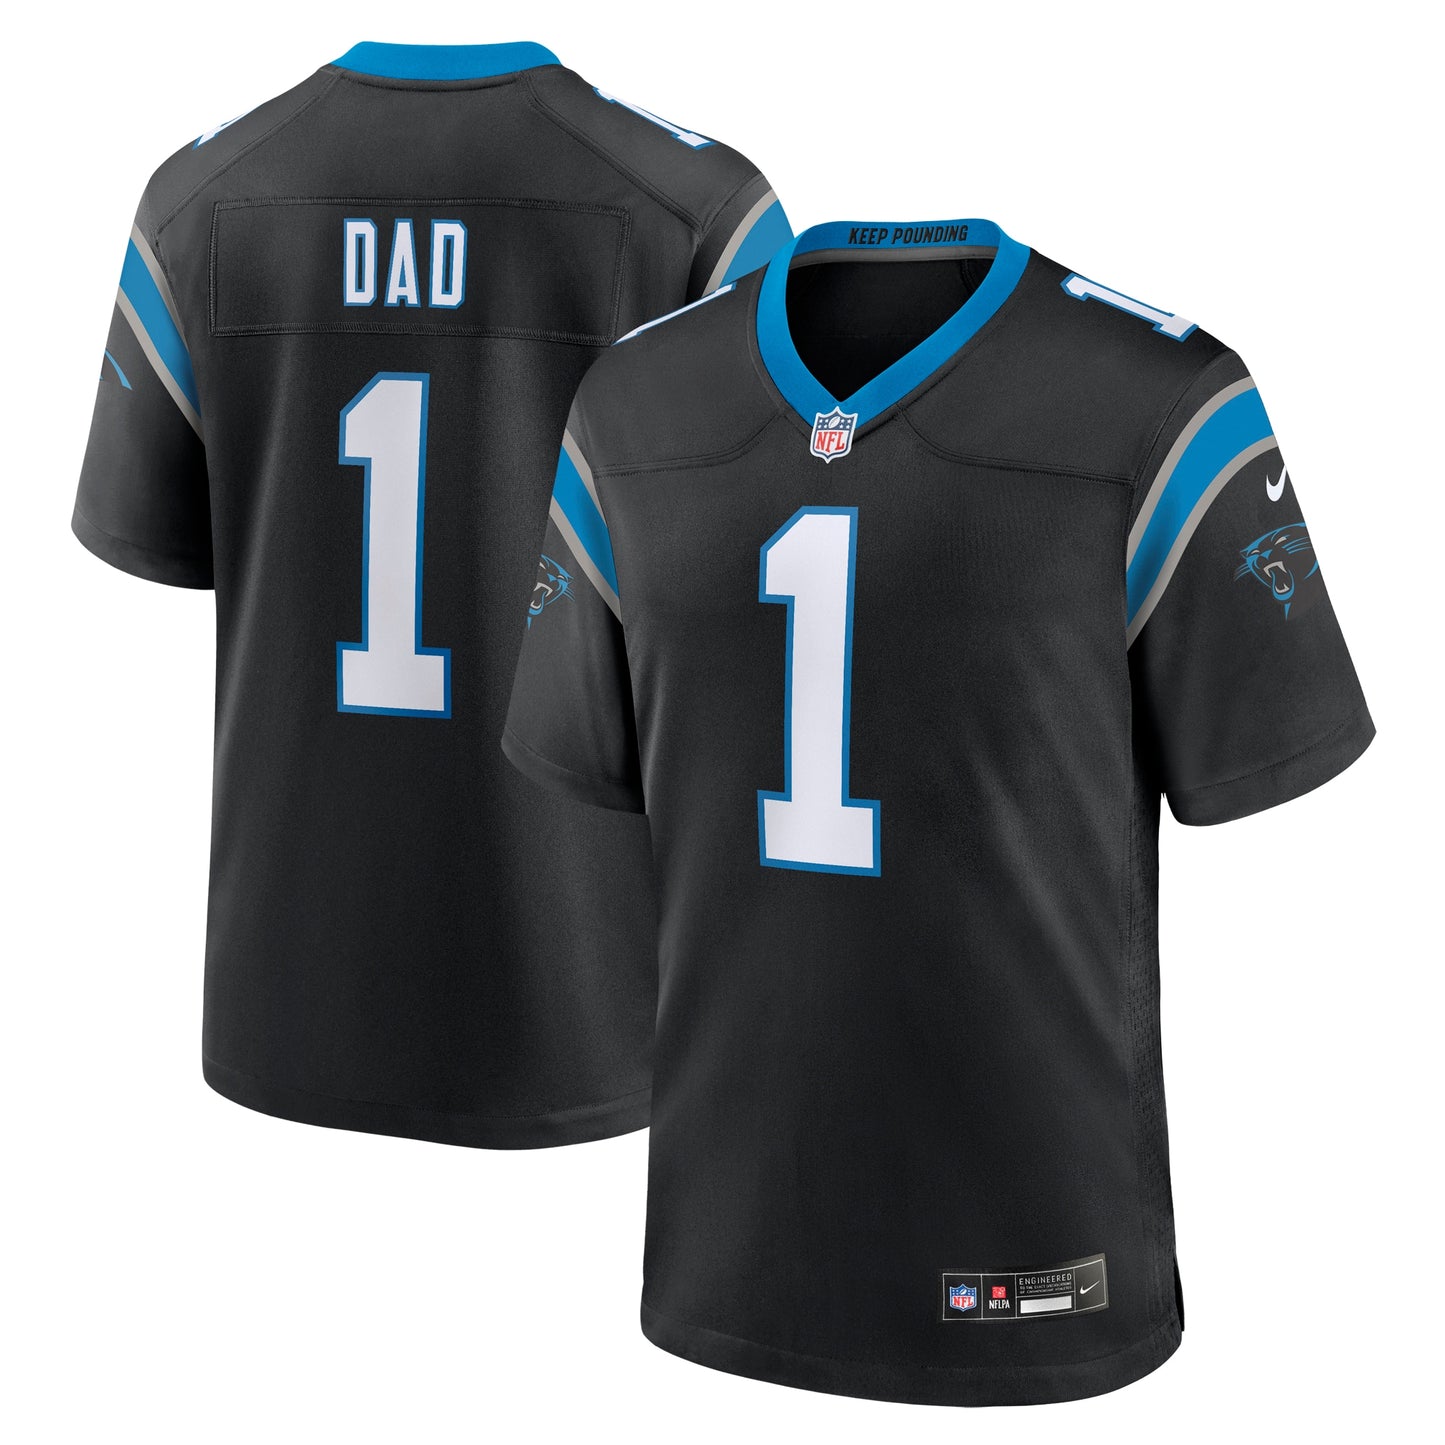 Number 1 Dad Carolina Panthers Nike Game Jersey - Black